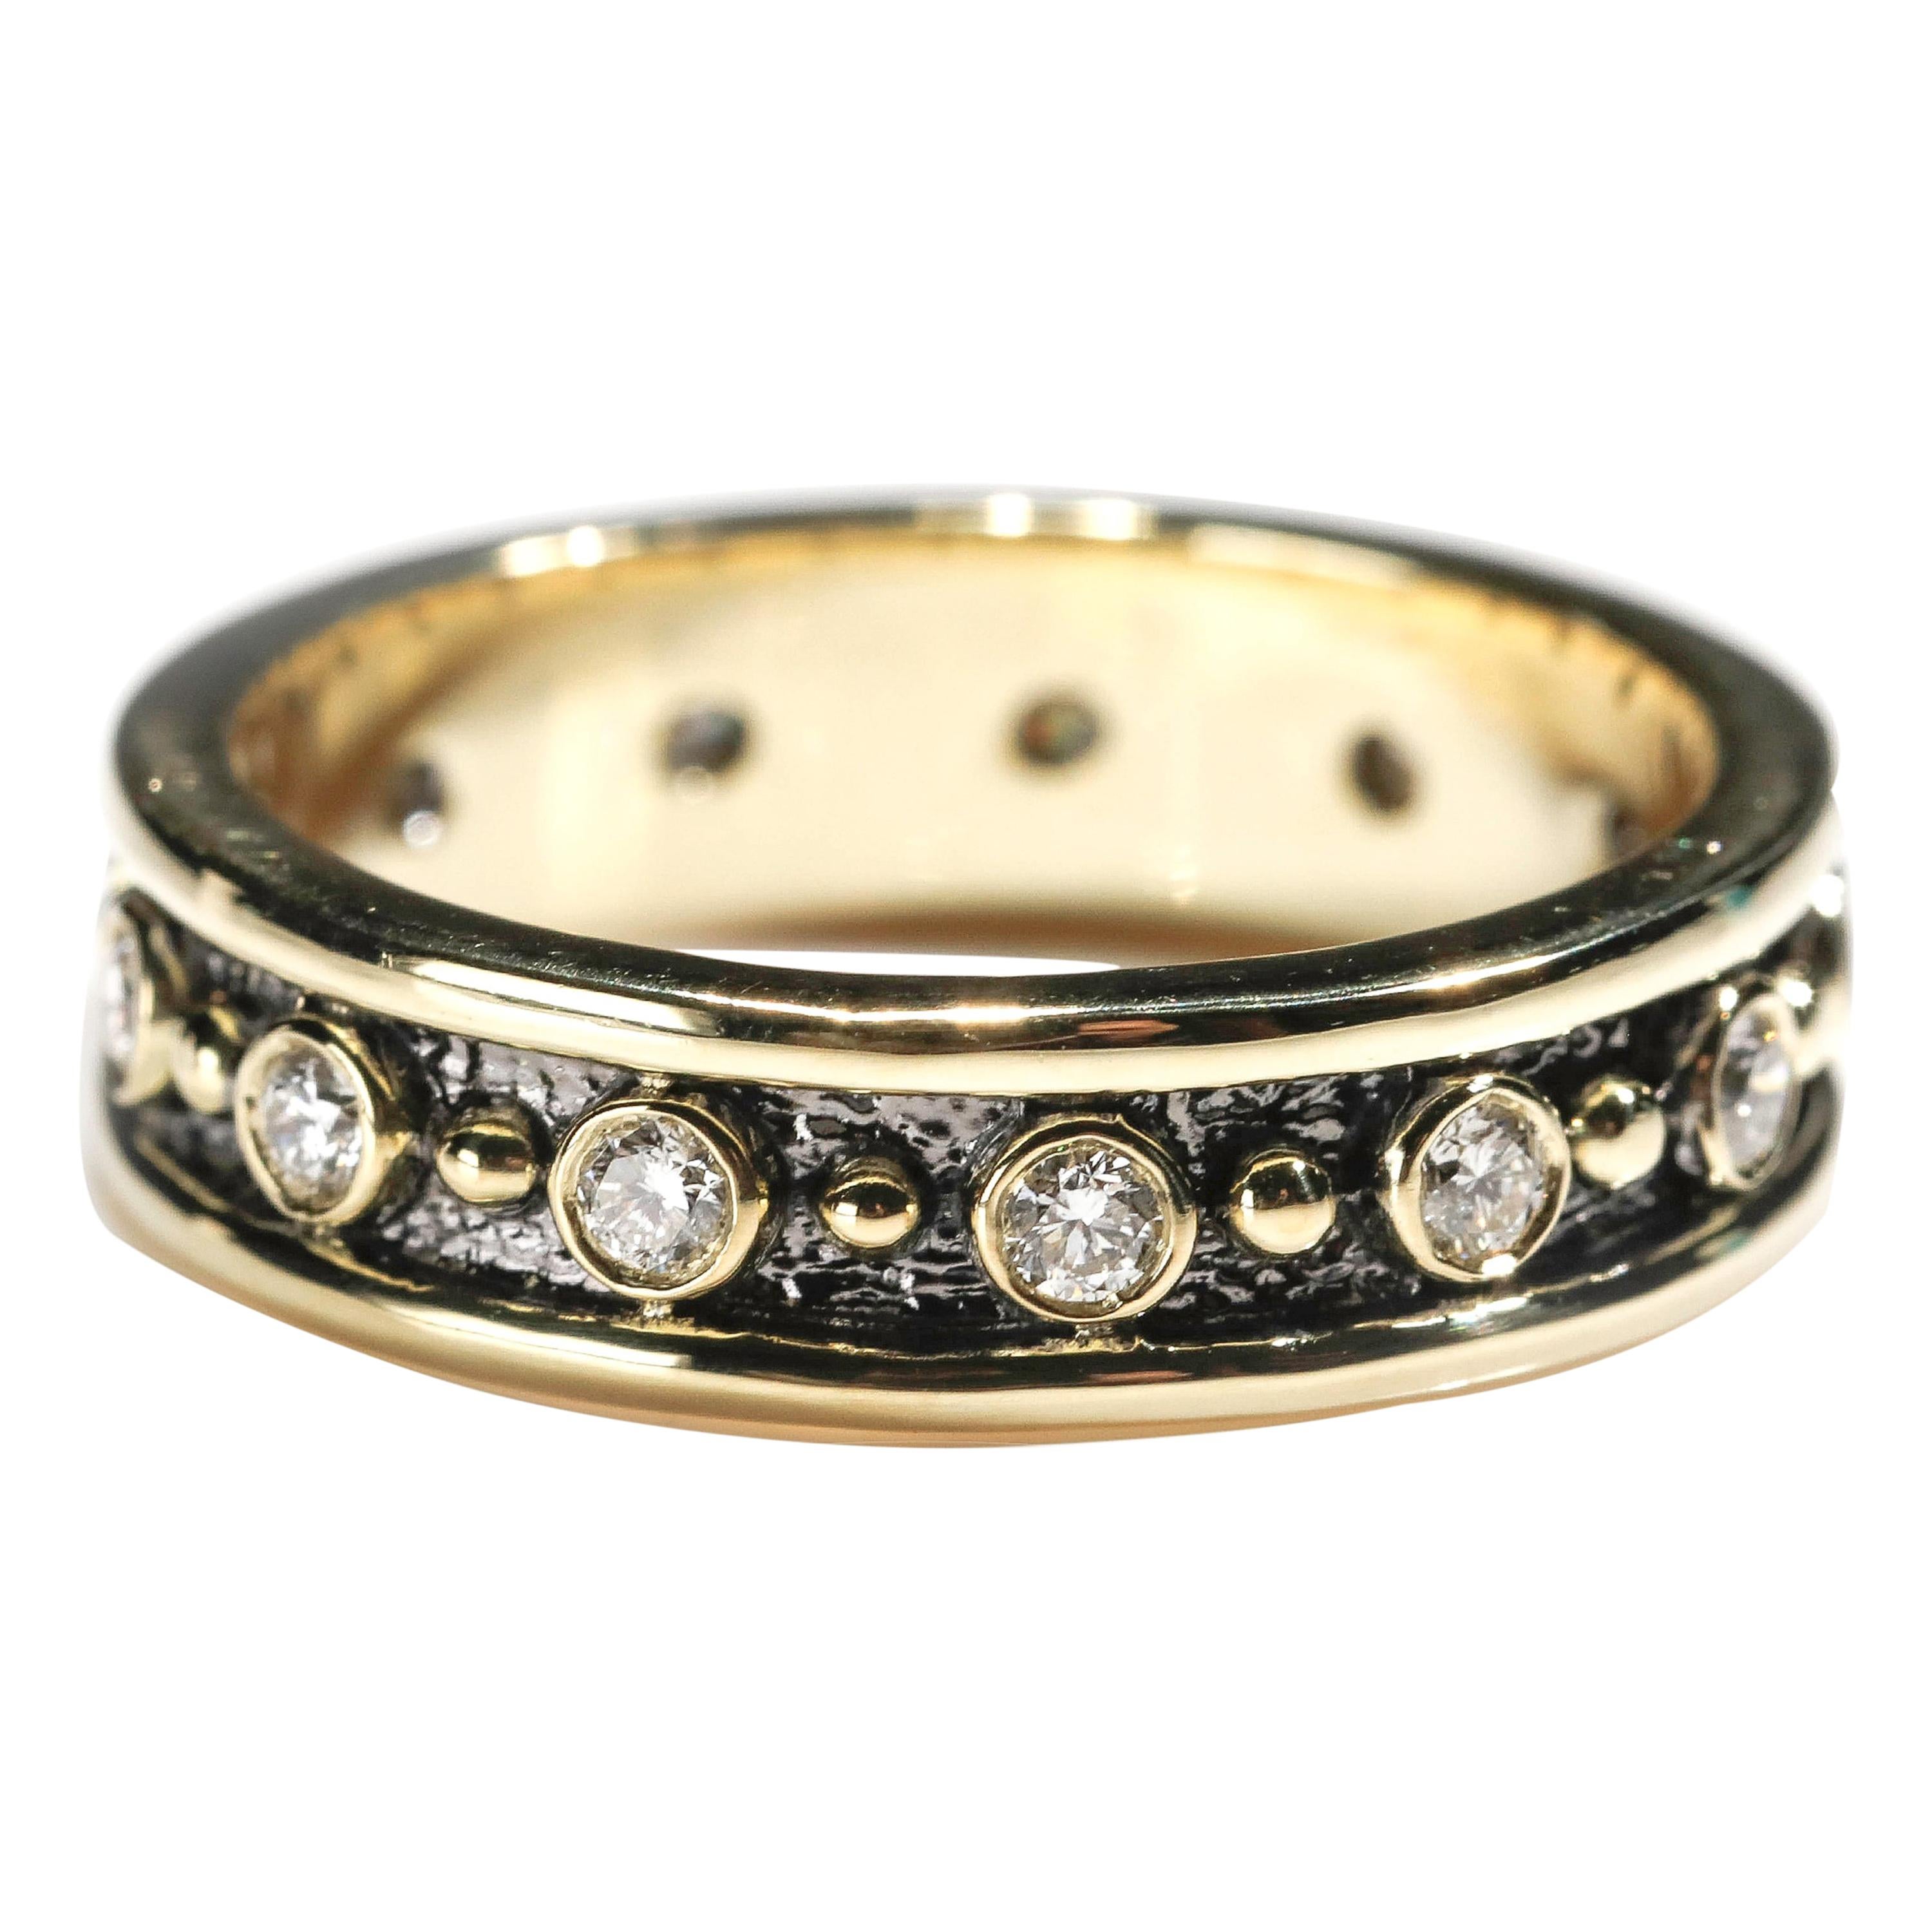 18 Karat Yellow Gold 0.35 Carat Round Cut Diamond Full Band Ring US Size 6